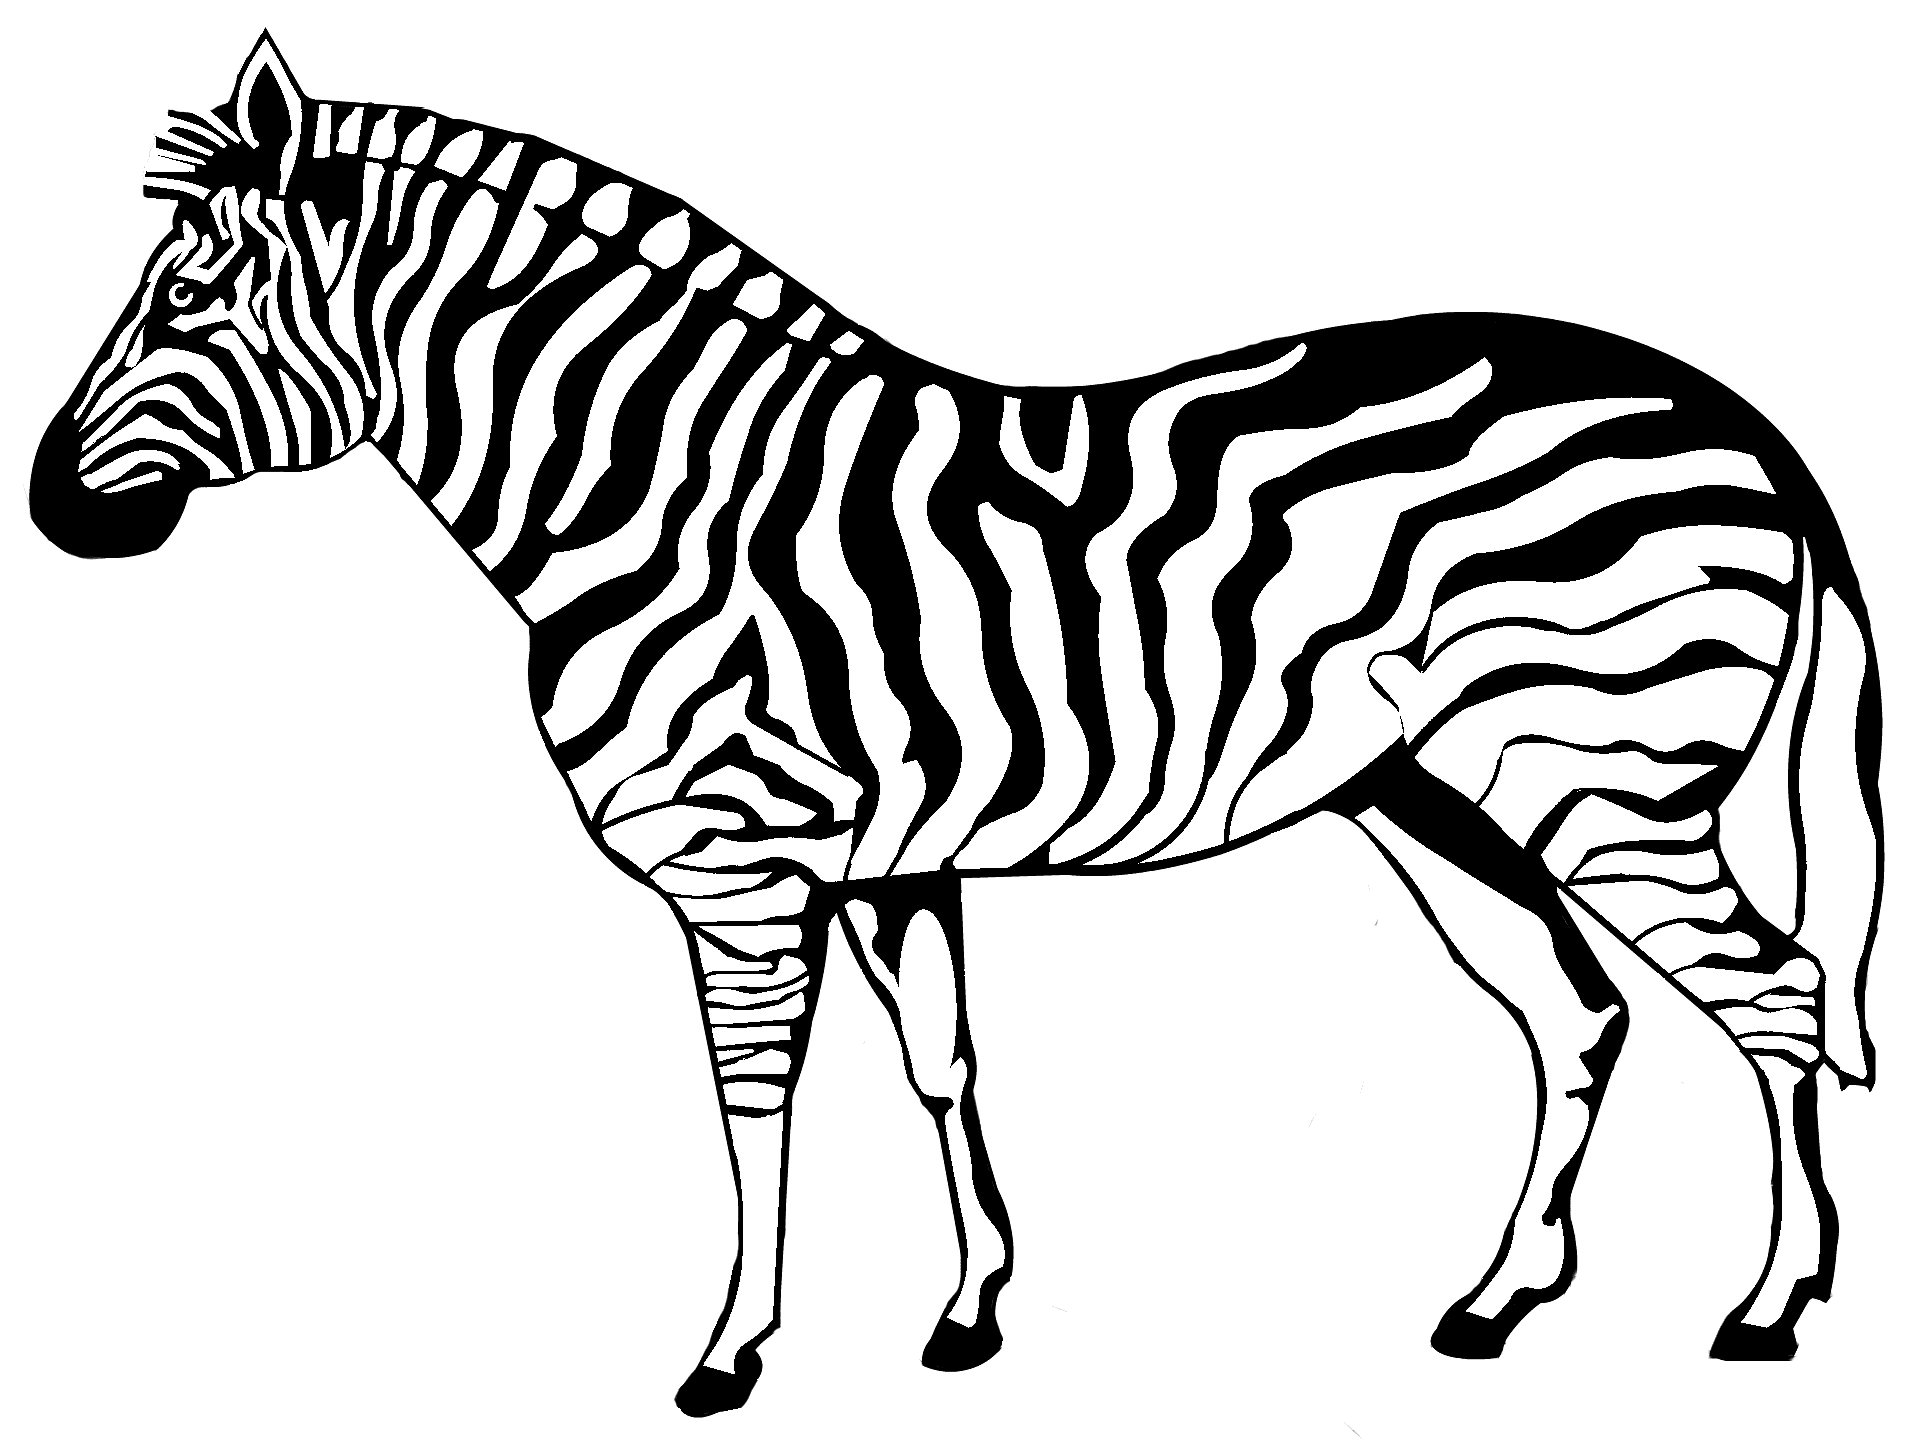 Målarbok av en zebra